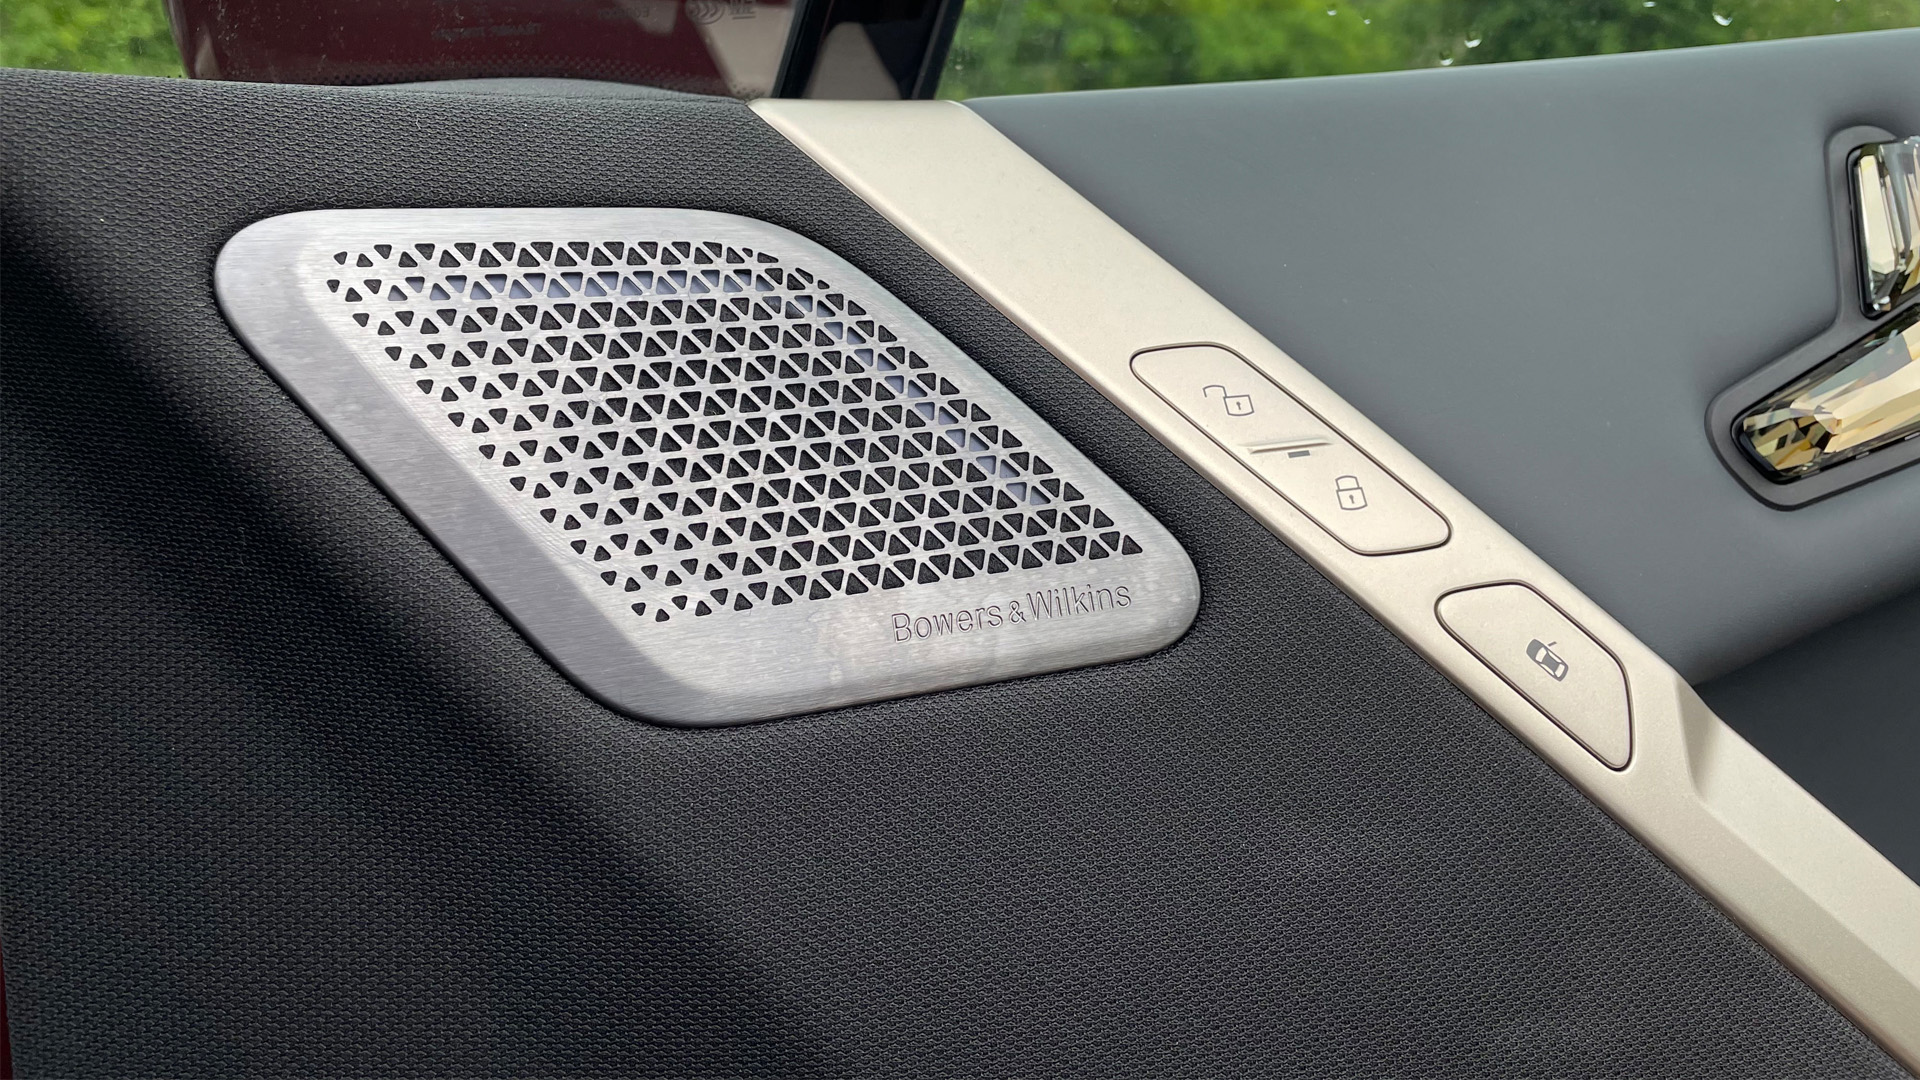 In-car surround sound: Bowers & Wilkins Diamond Surround Sound (BMW iX)